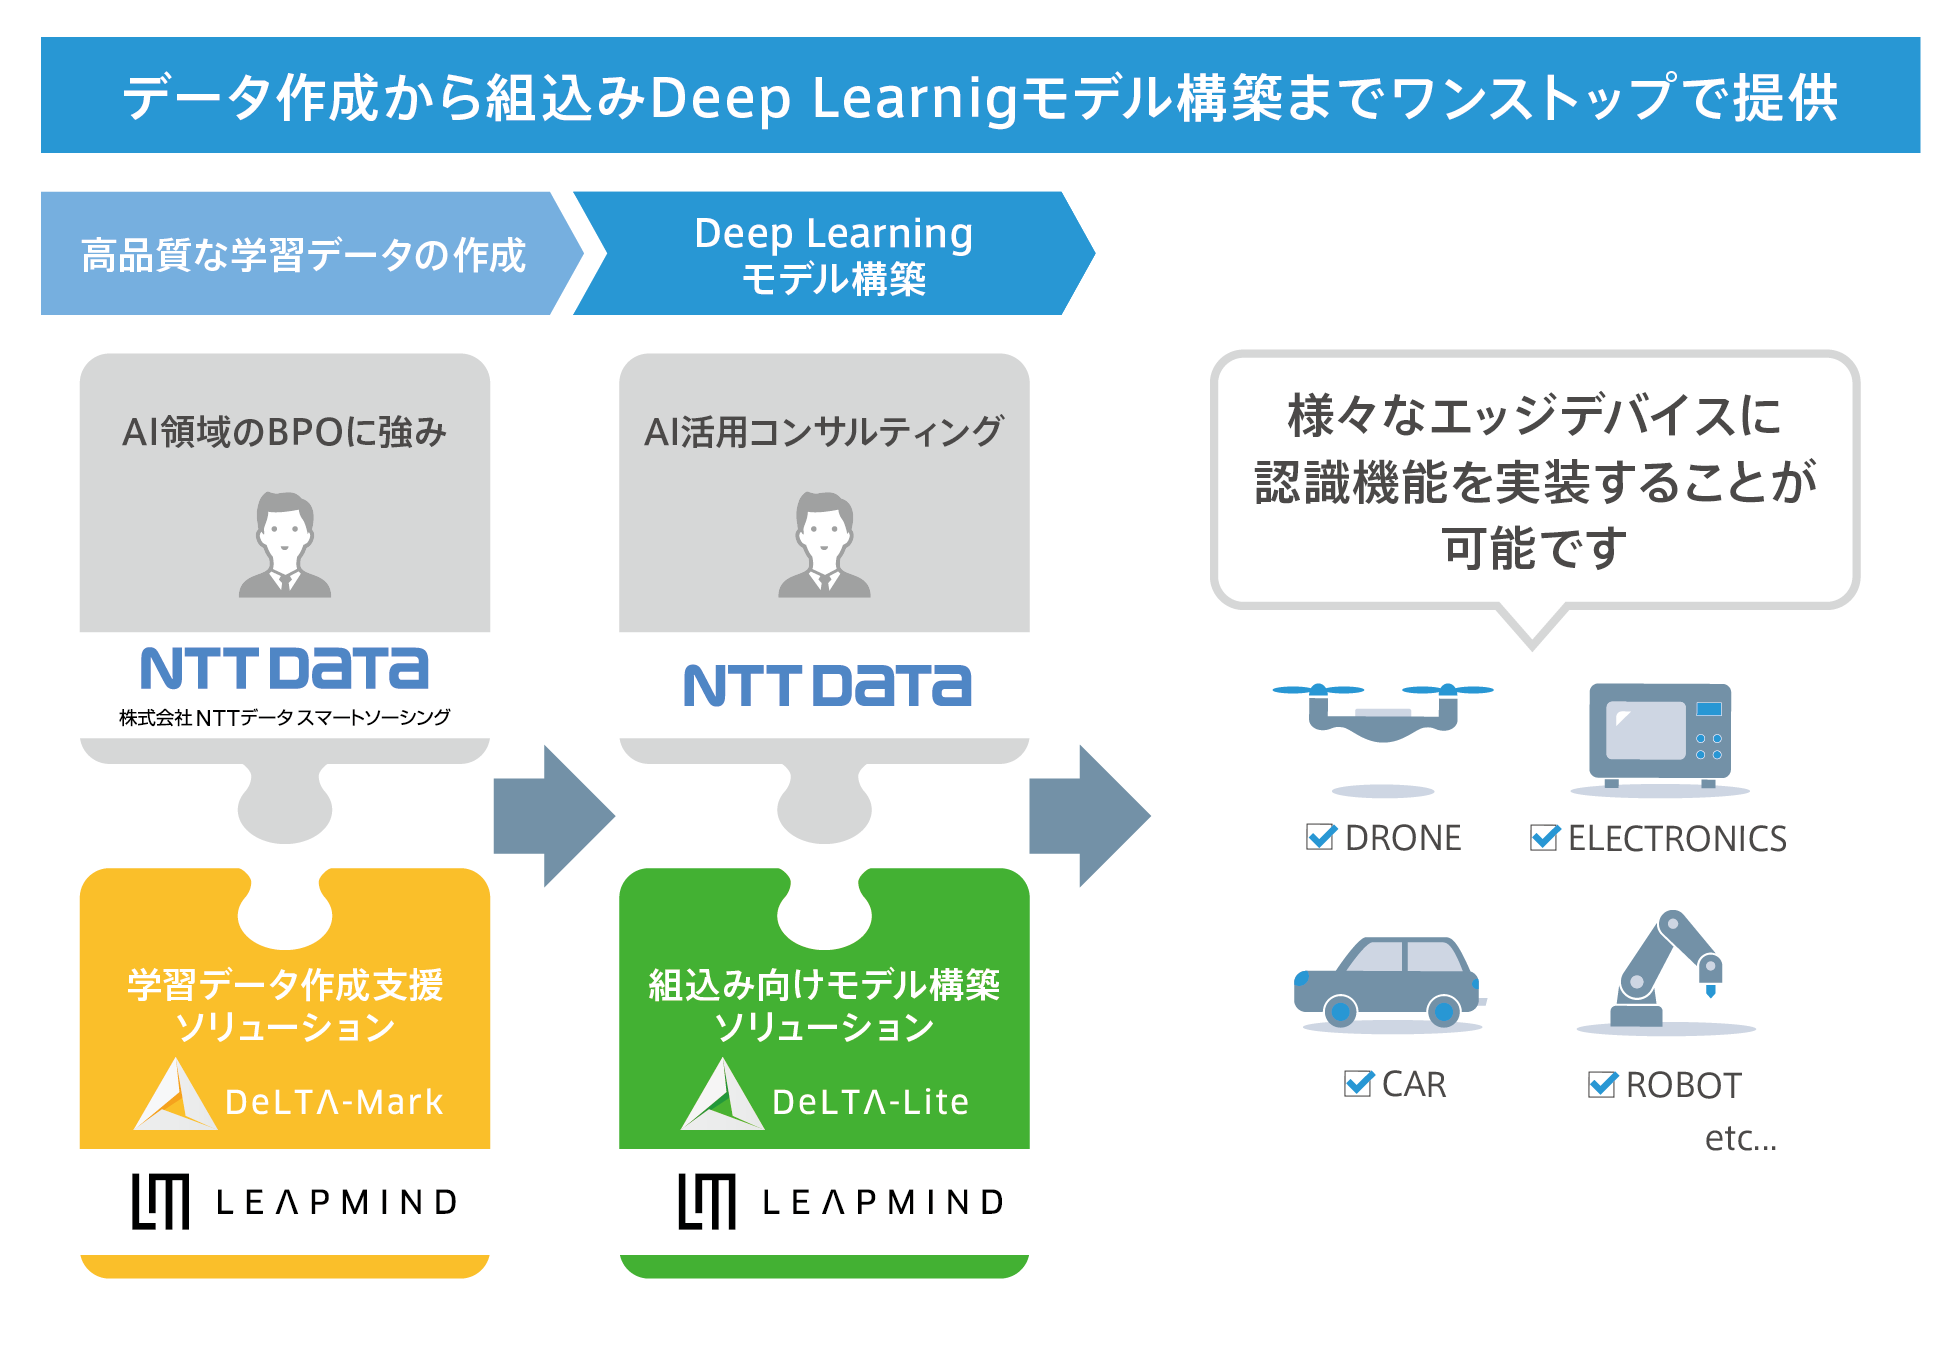 NTTデータ、NTTデータ・スマートソーシングとの取り組みについて